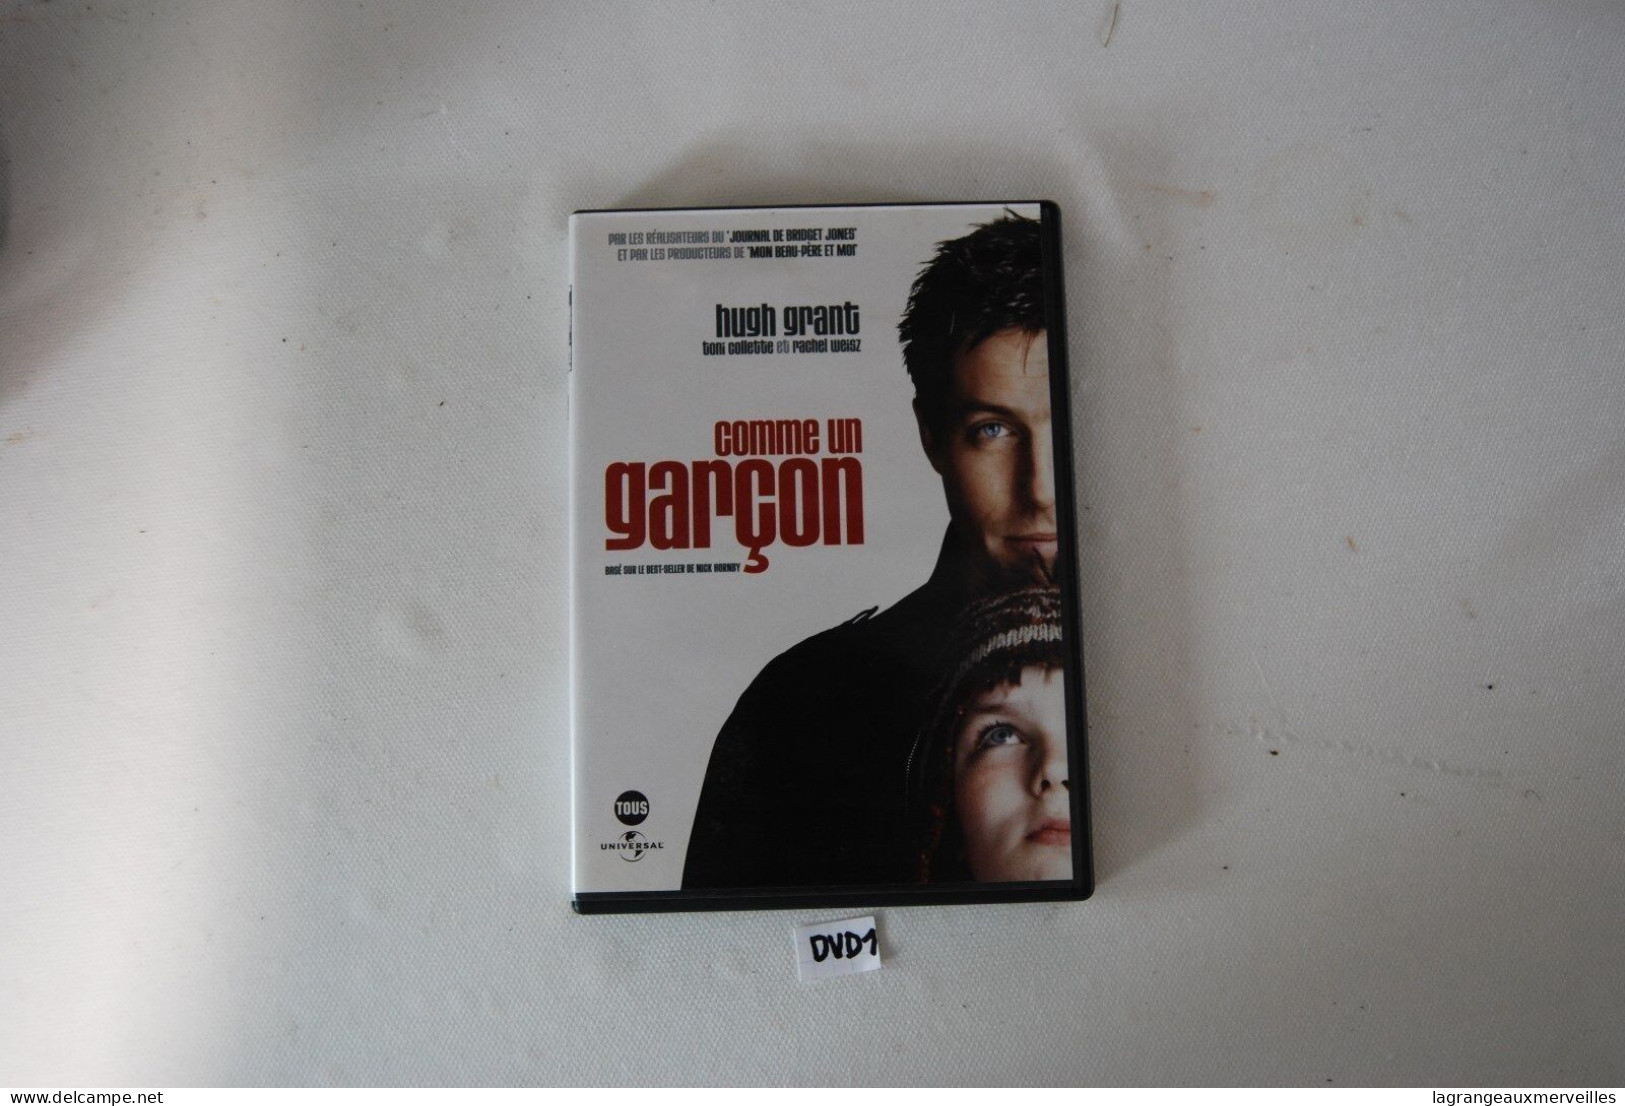 DVD 1 - COMME UN GARCON - HUGH GRANT - Kinder & Familie